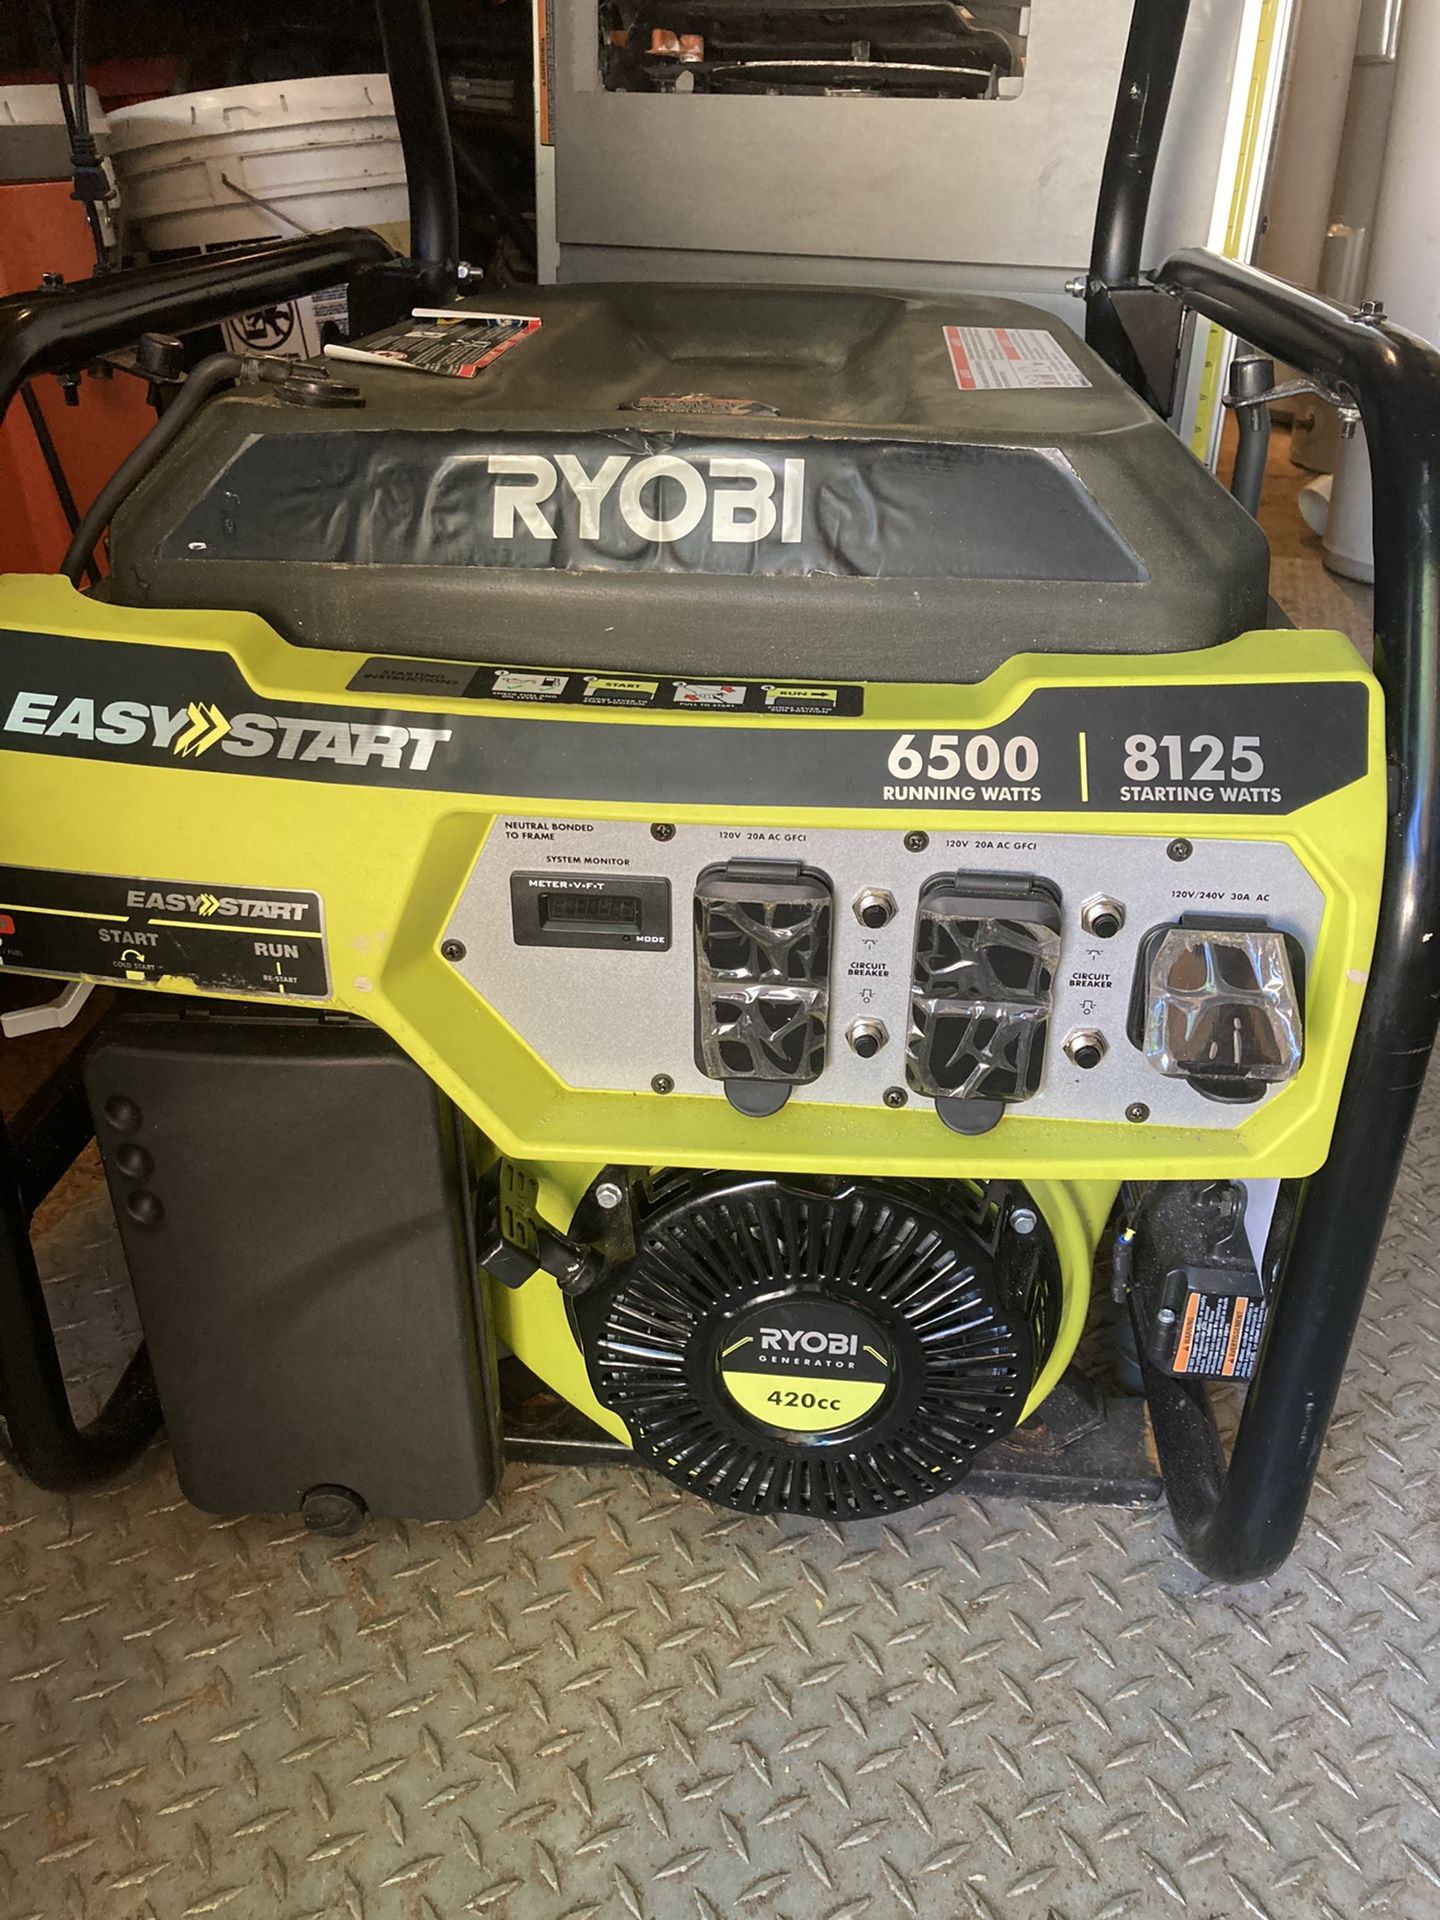 Ryobi 420 cc generator